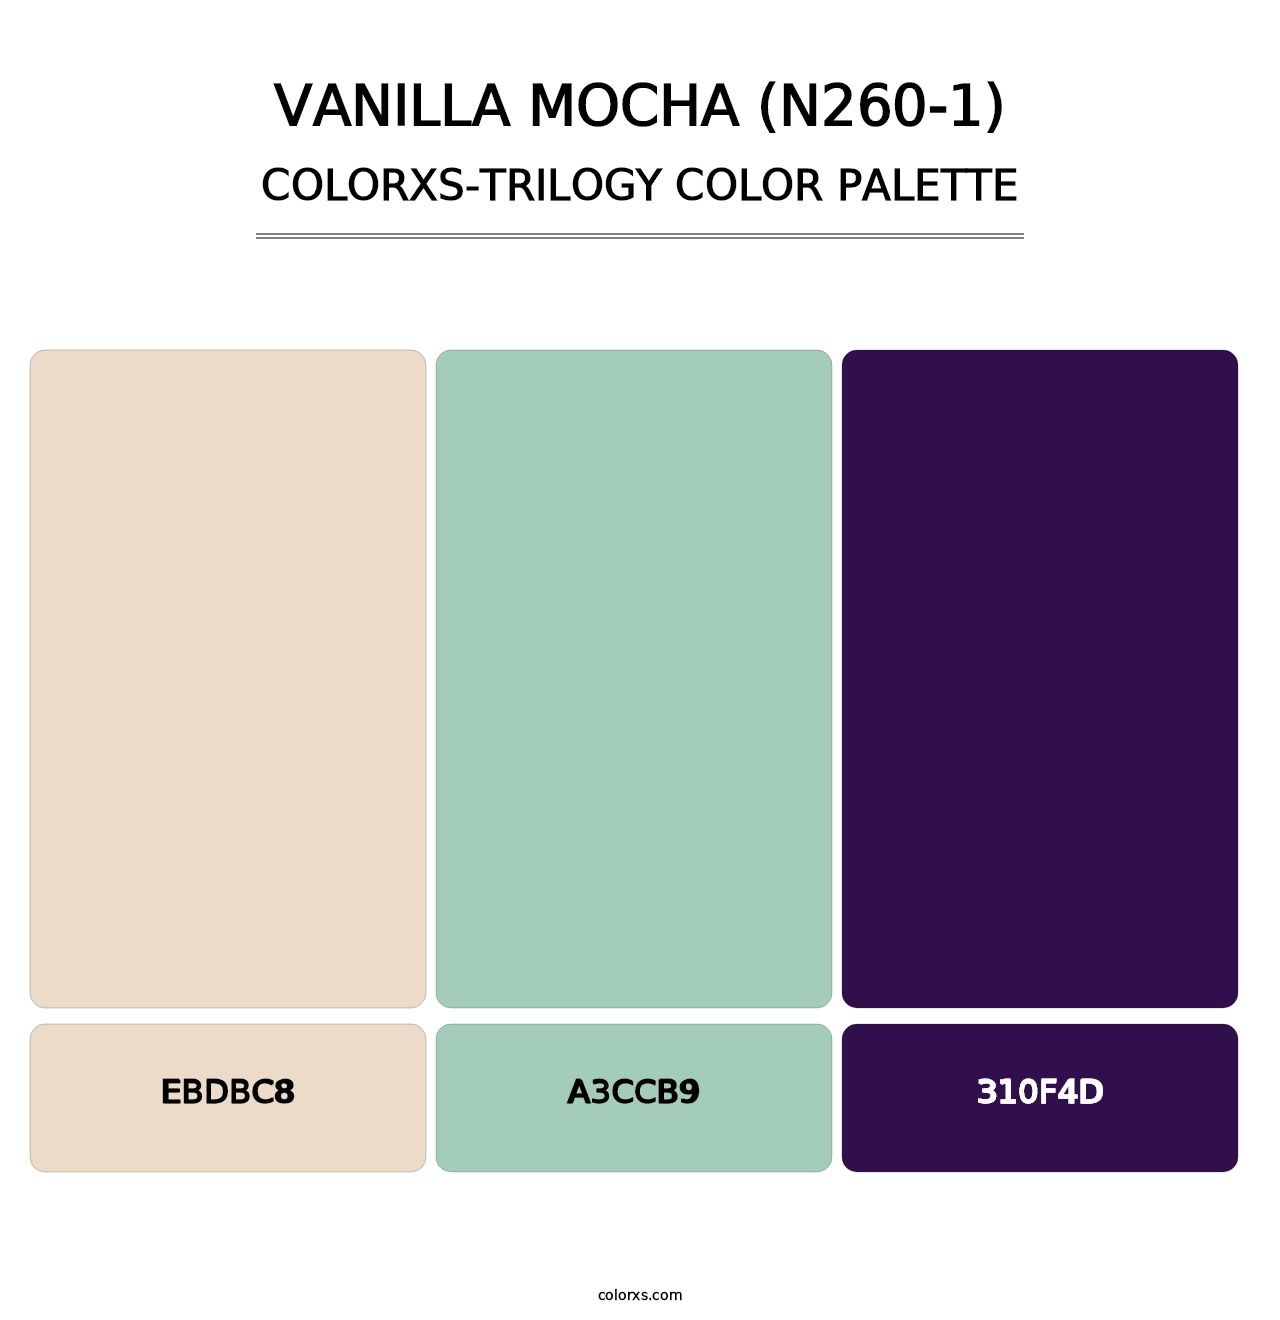 Vanilla Mocha (N260-1) - Colorxs Trilogy Palette